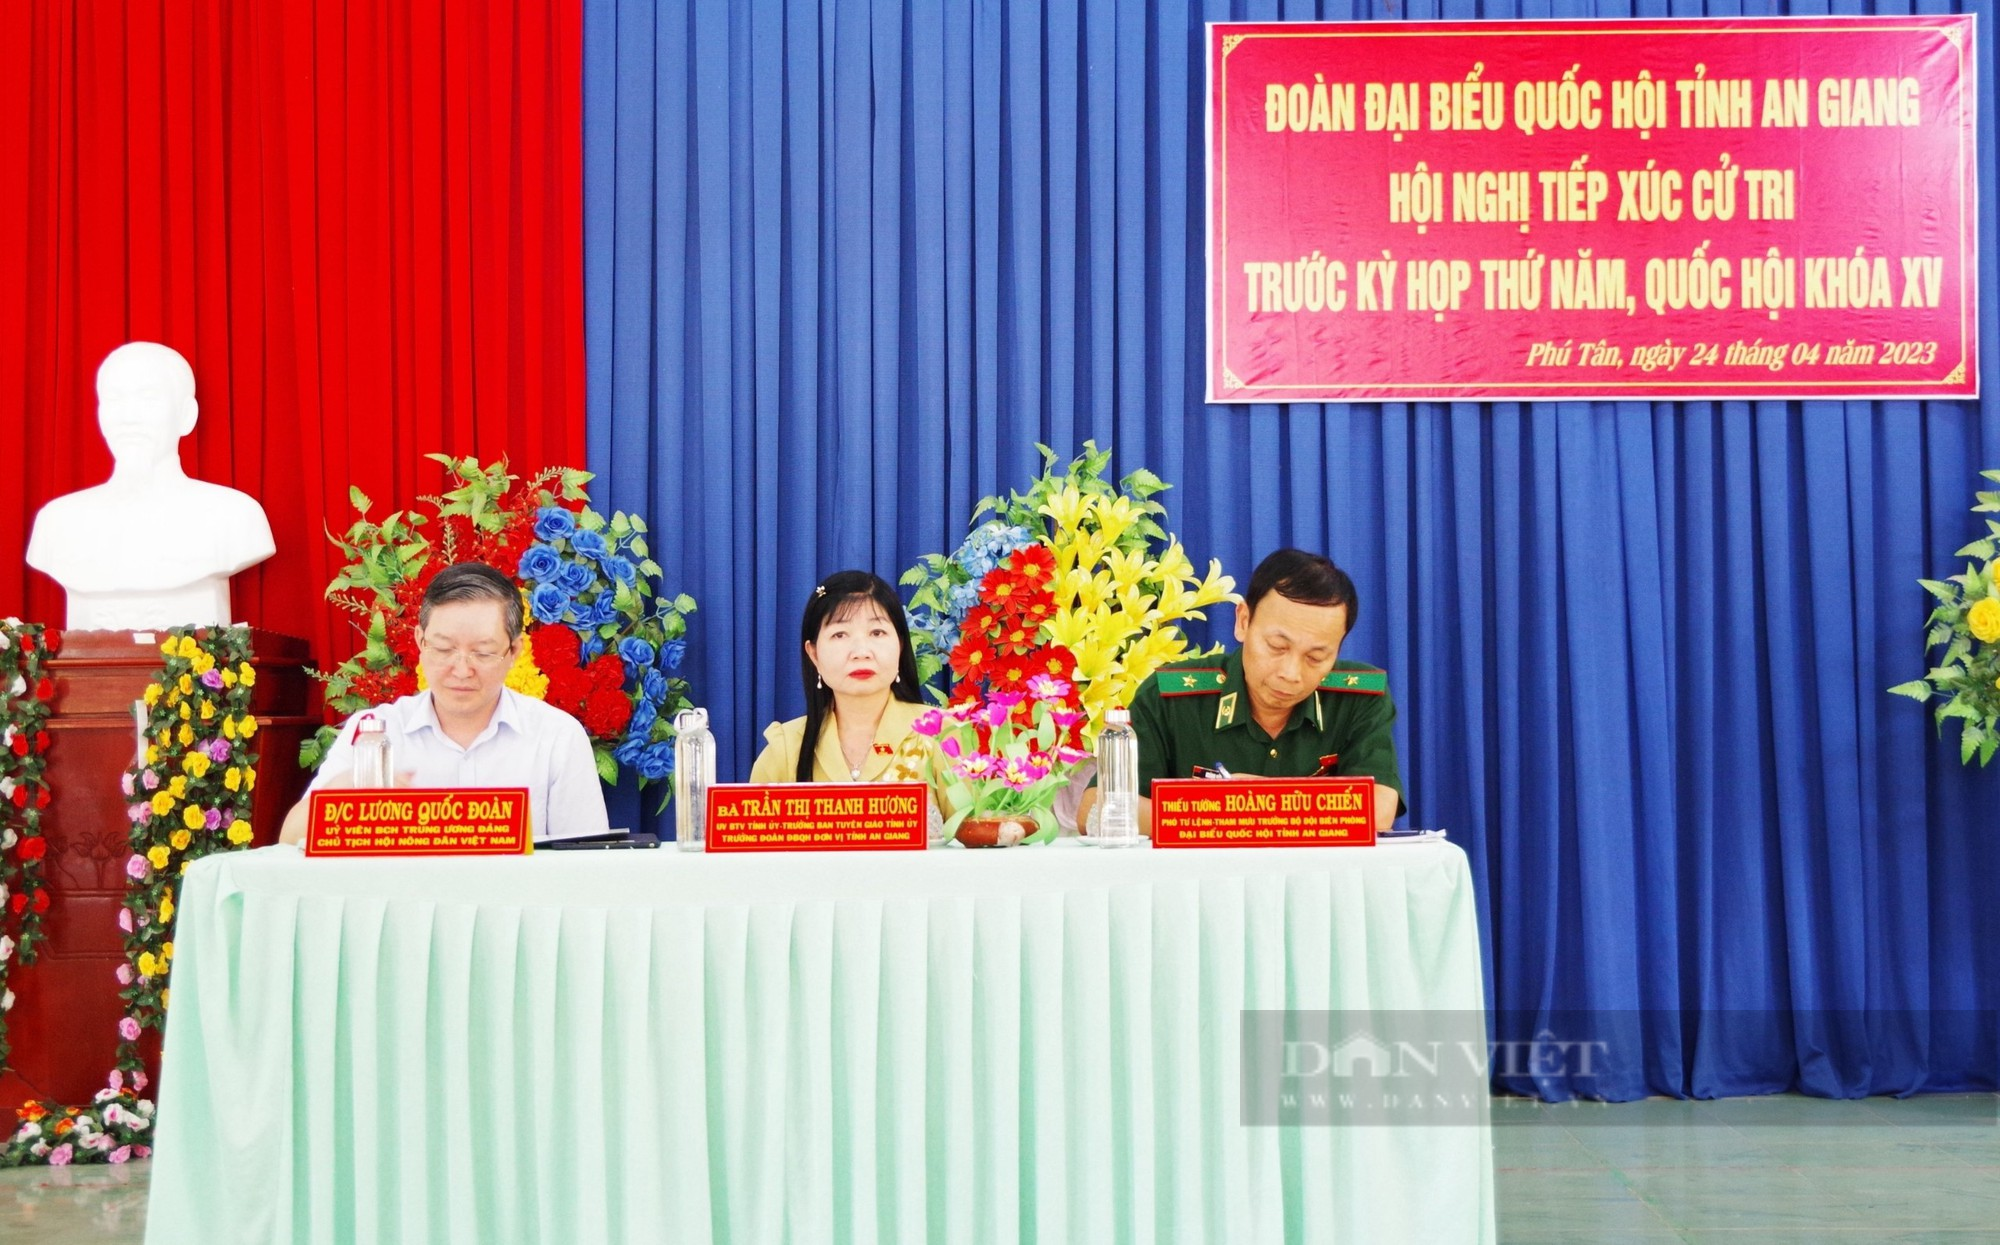 Chủ tịch Hội NDVN và đoàn đại biểu Quốc hội tỉnh An Giang tiếp xúc cử tri huyện Phú Tân - Ảnh 1.